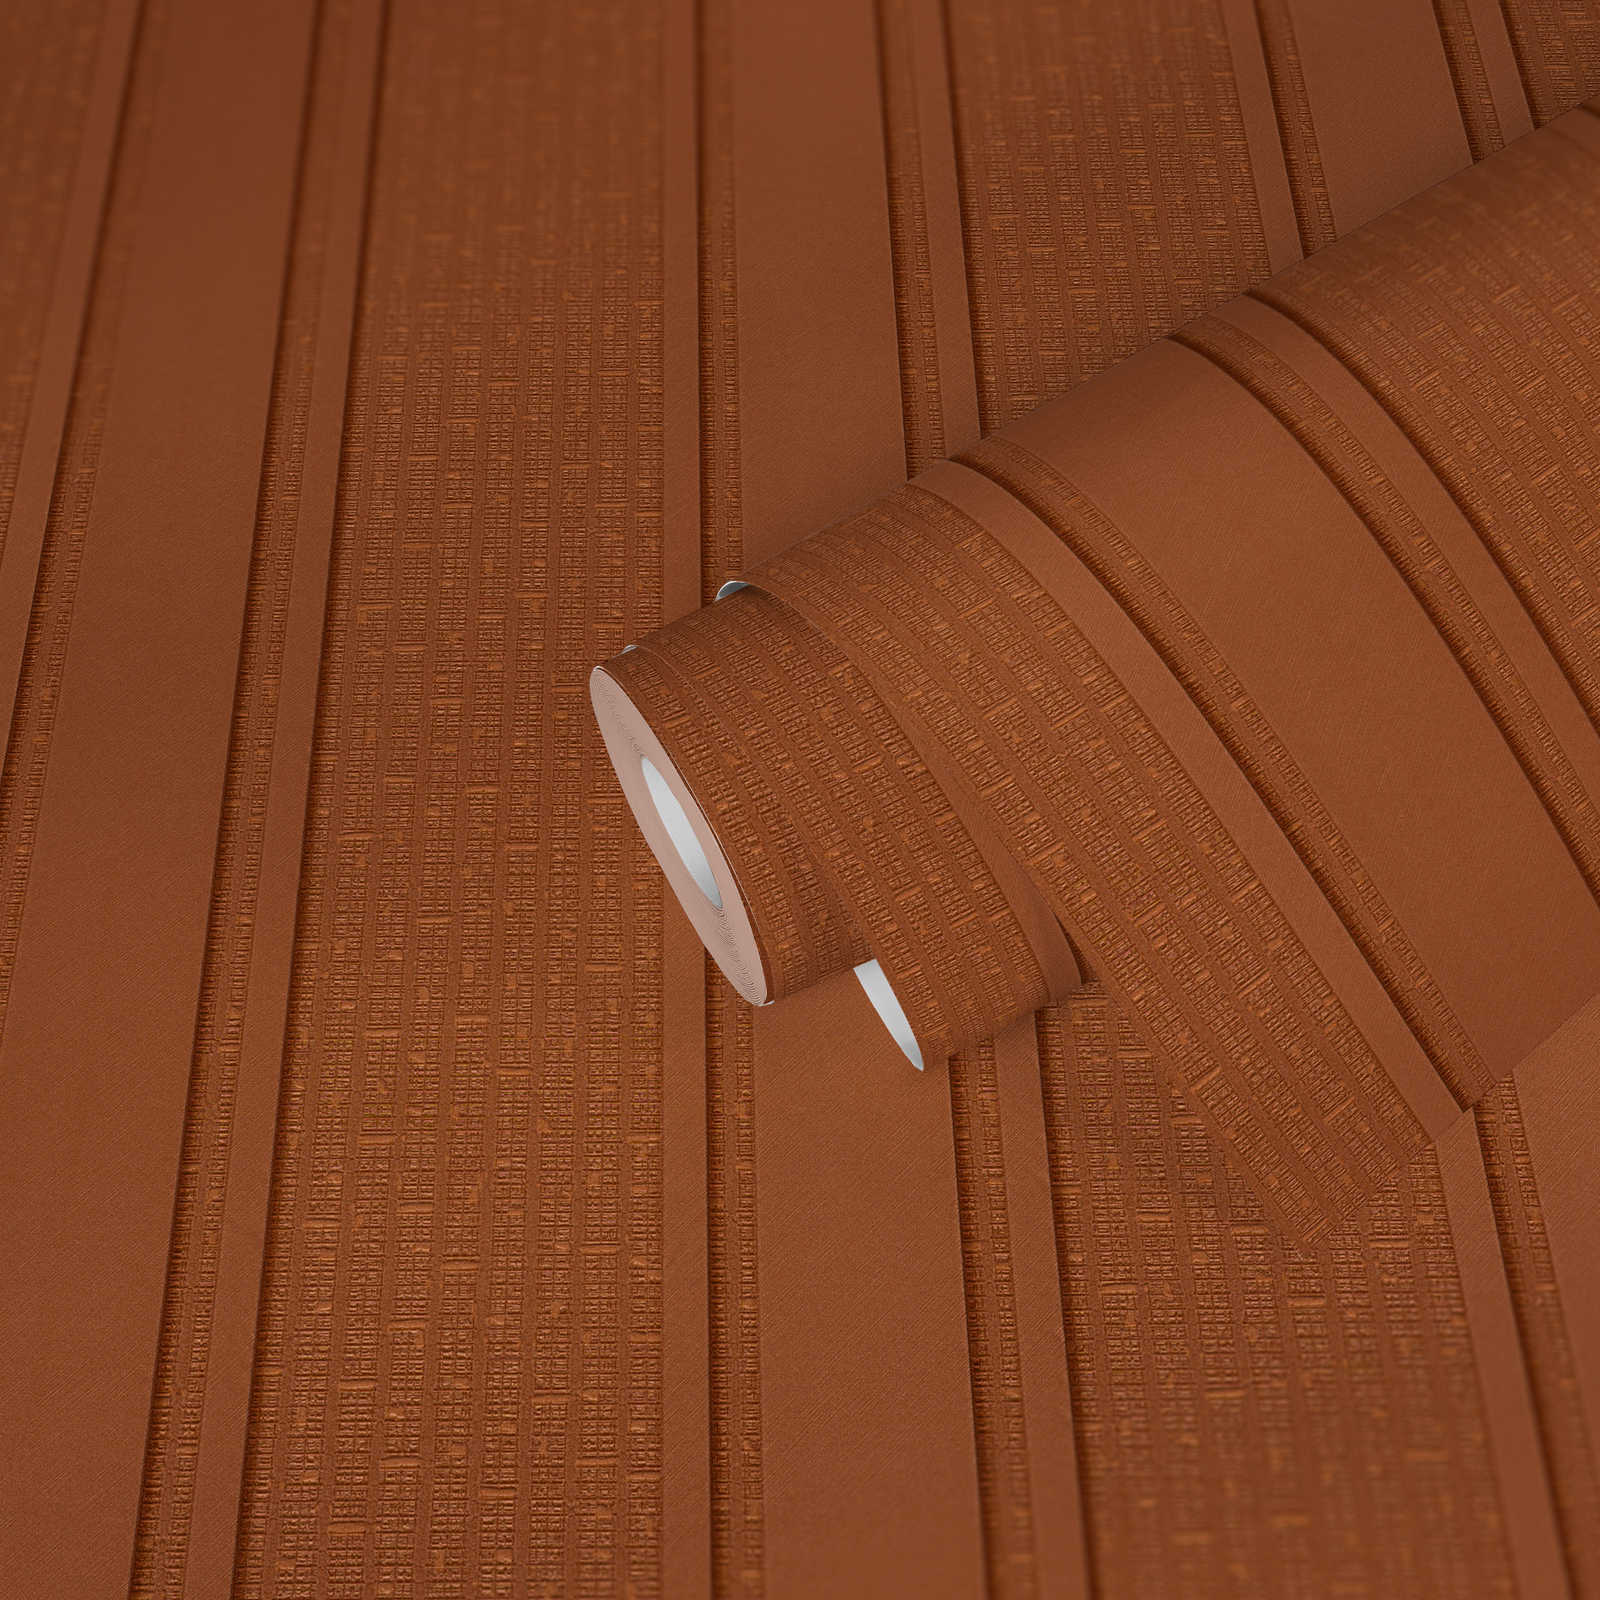             VERSACE metallic strepen & structuureffect behang - metallic, oranje
        